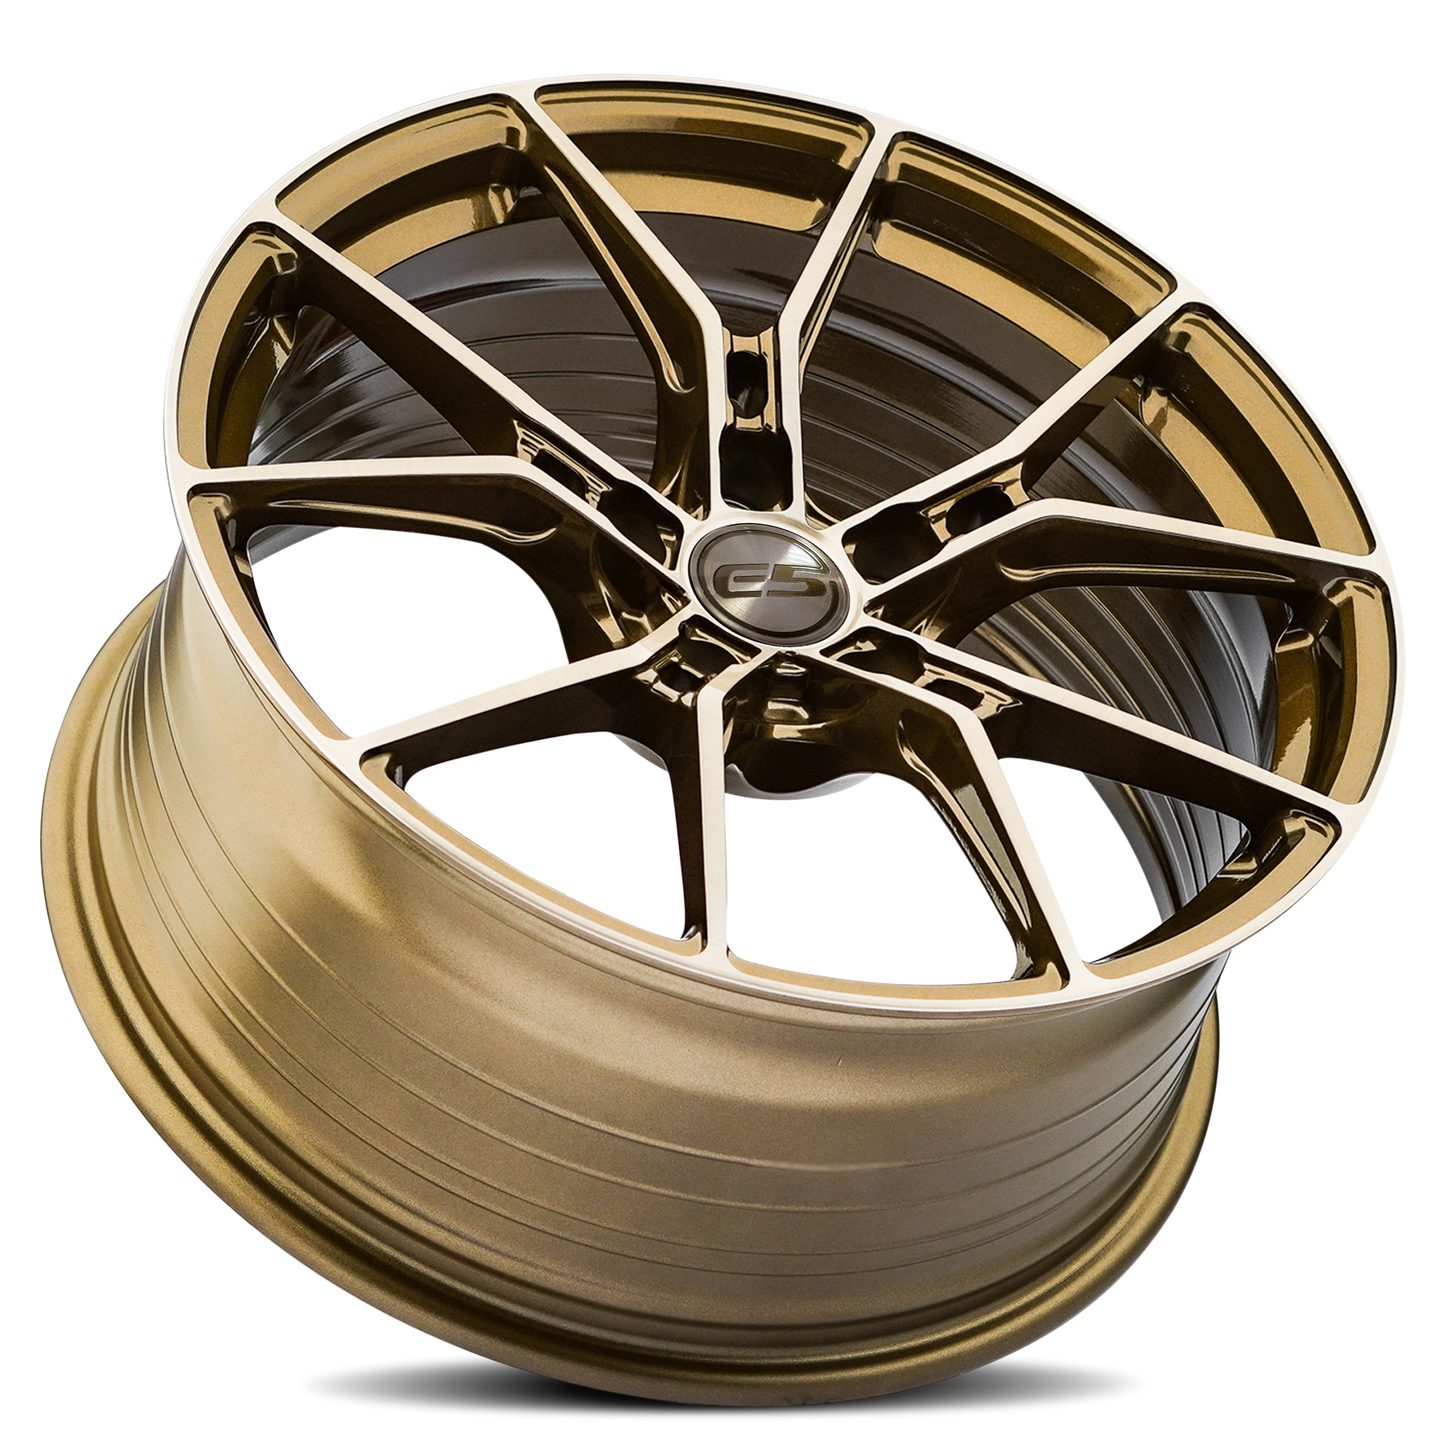 C8 Corvette E5 Daytona Wheel - Bronze Brushed Tint (concave)